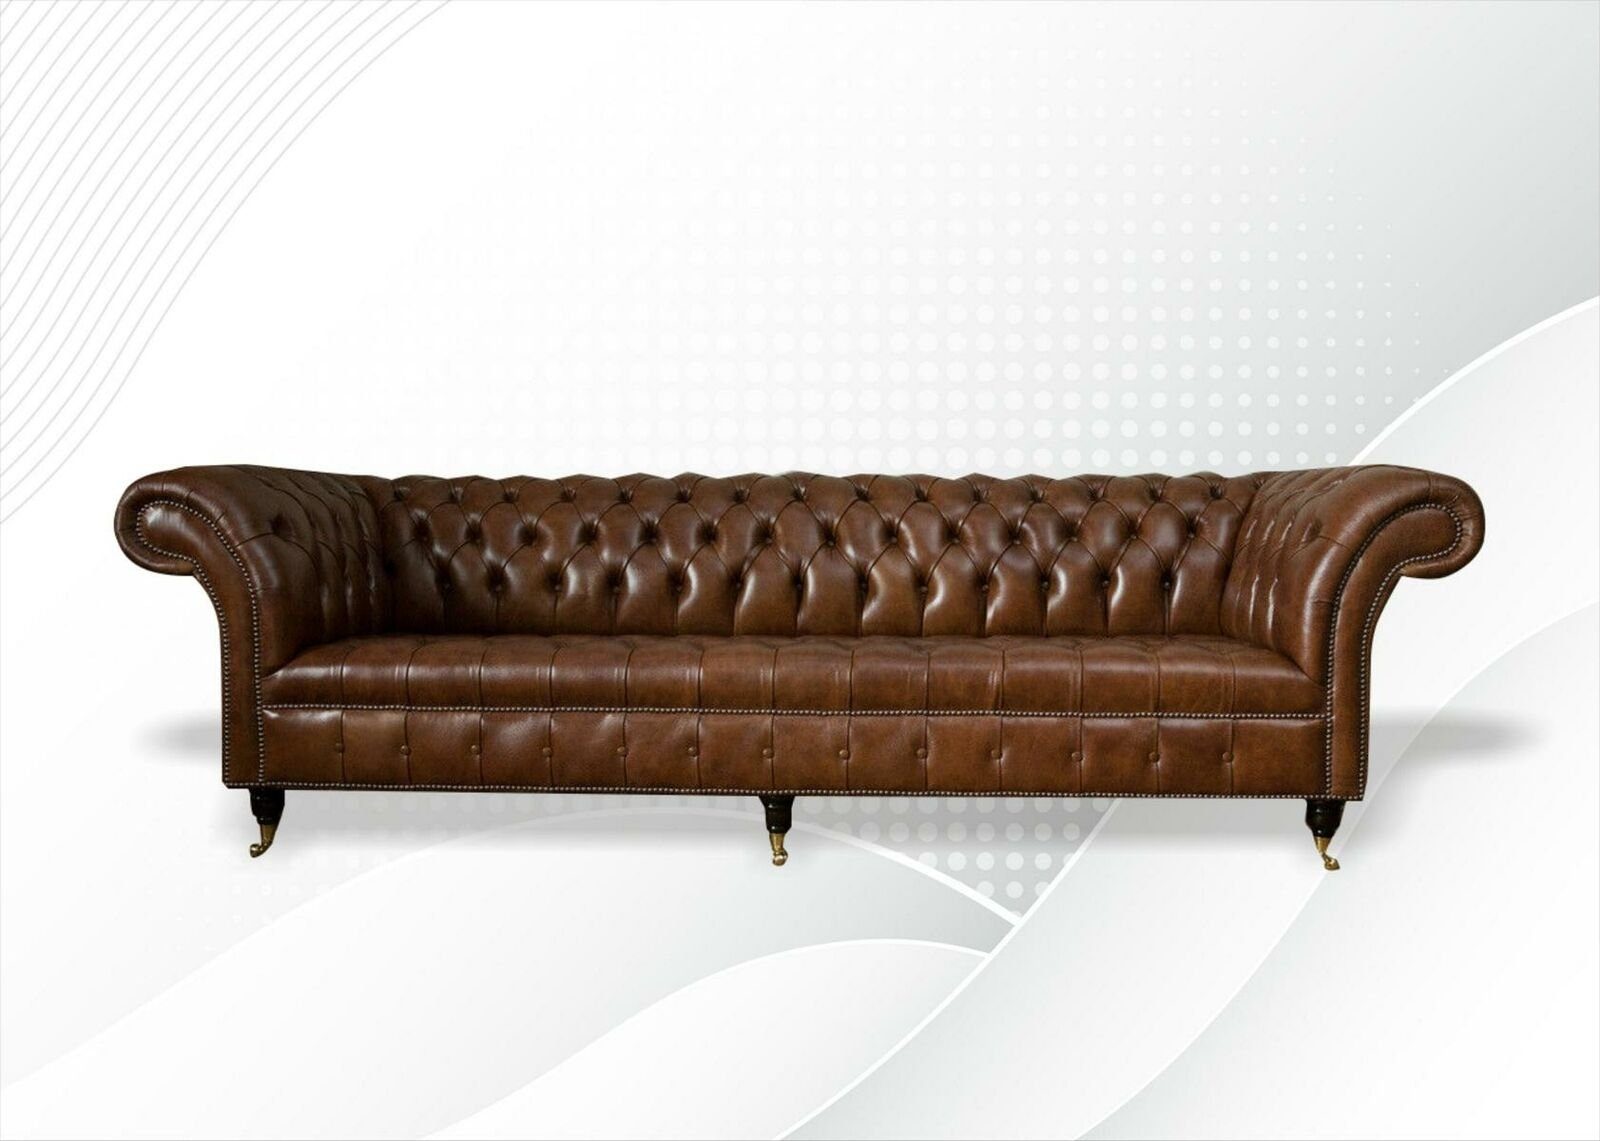 JVmoebel Chesterfield-Sofa, Chesterfield 4 Sitzer Modern Design Couchen Leder Sofa xxl big Möbel Braun sofas